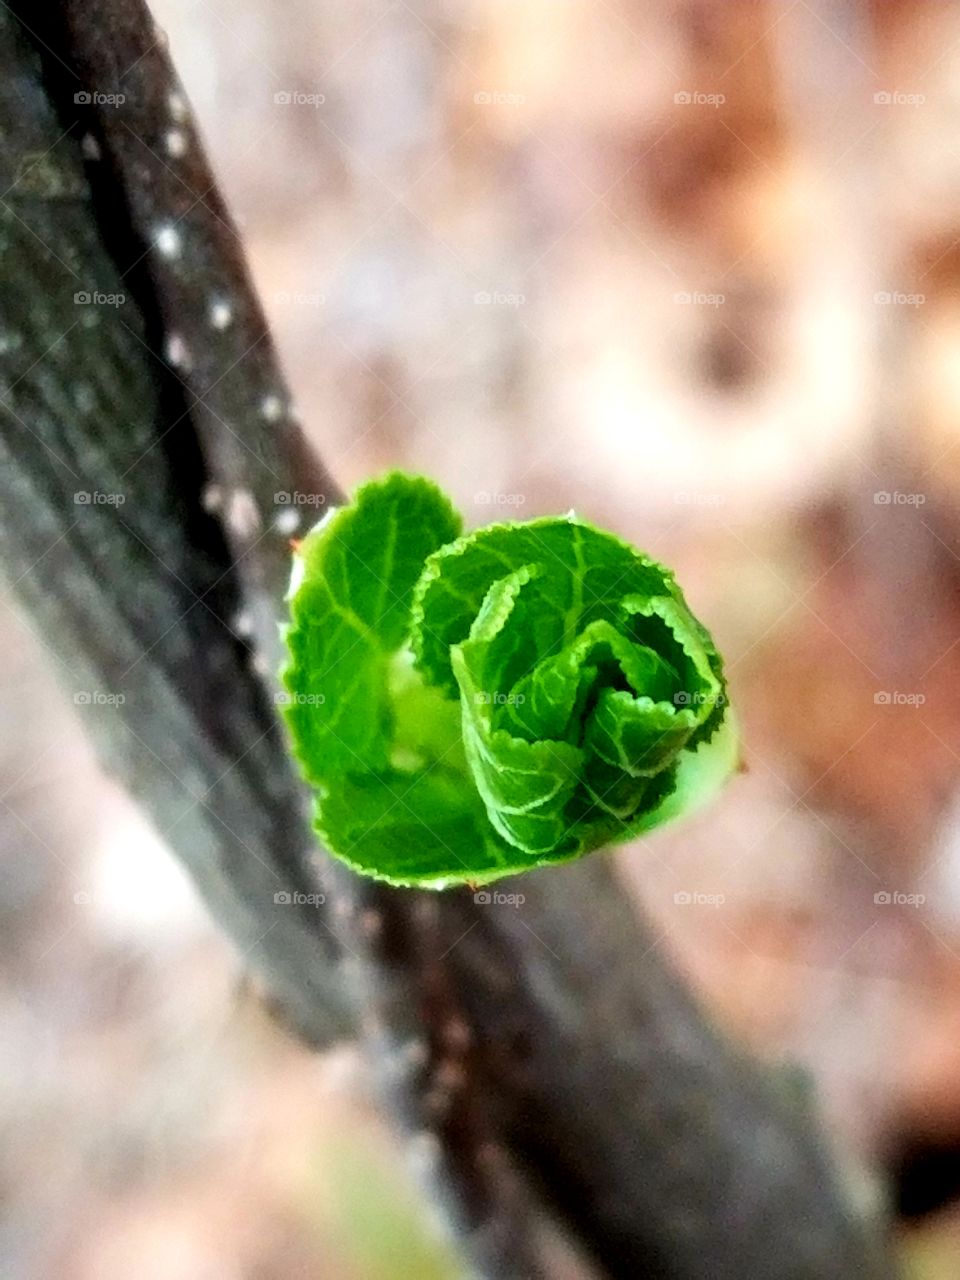 leaf springing up